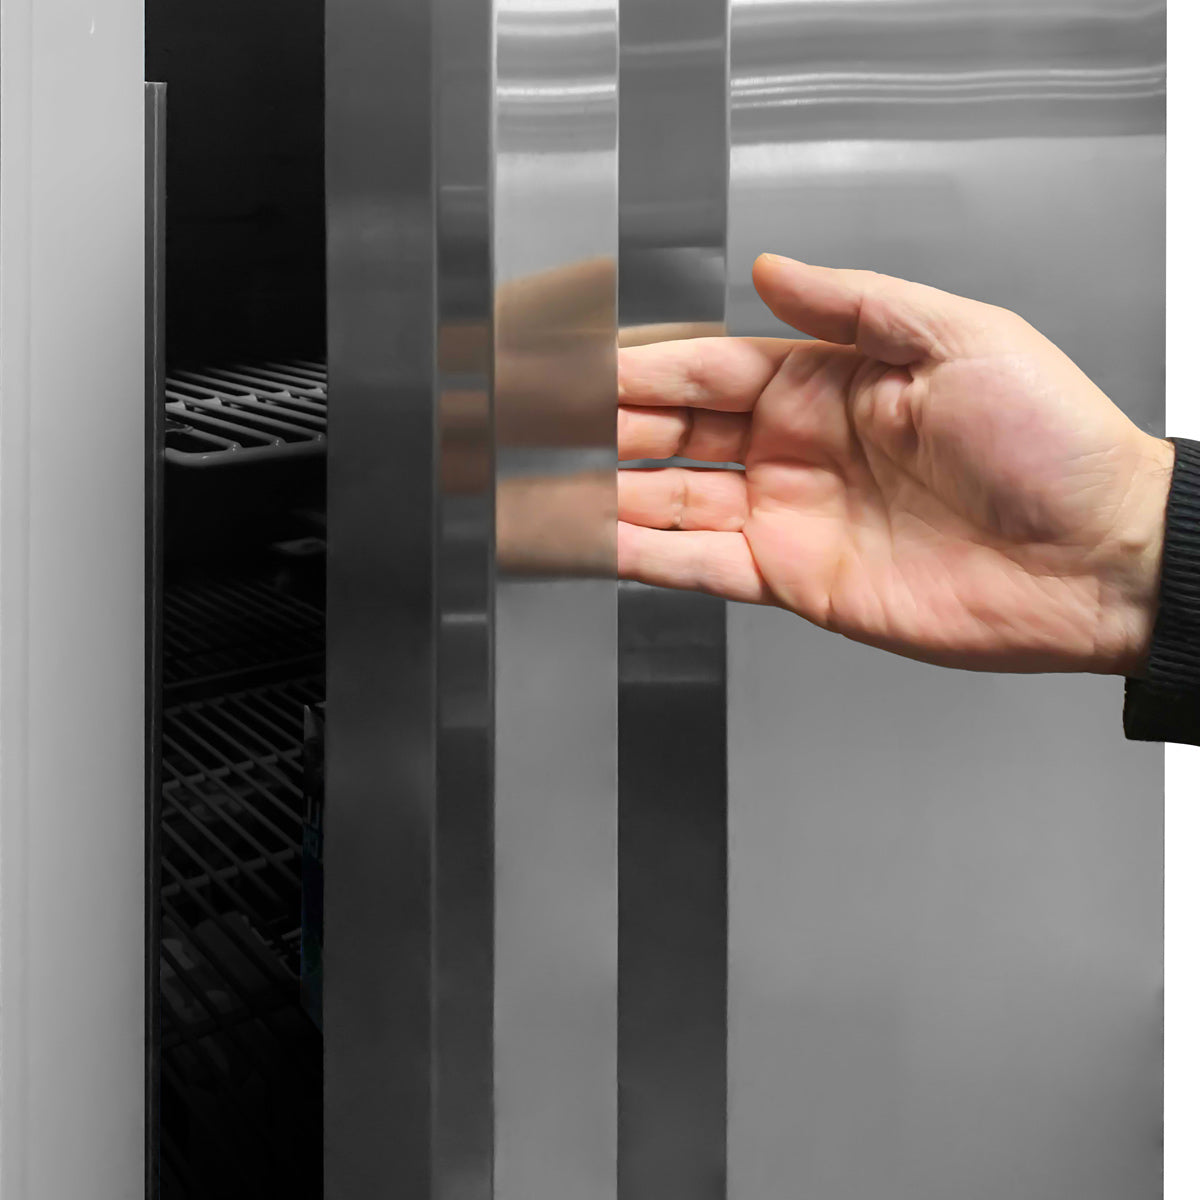 Køleskab (GN 2/1) - med 1 dør